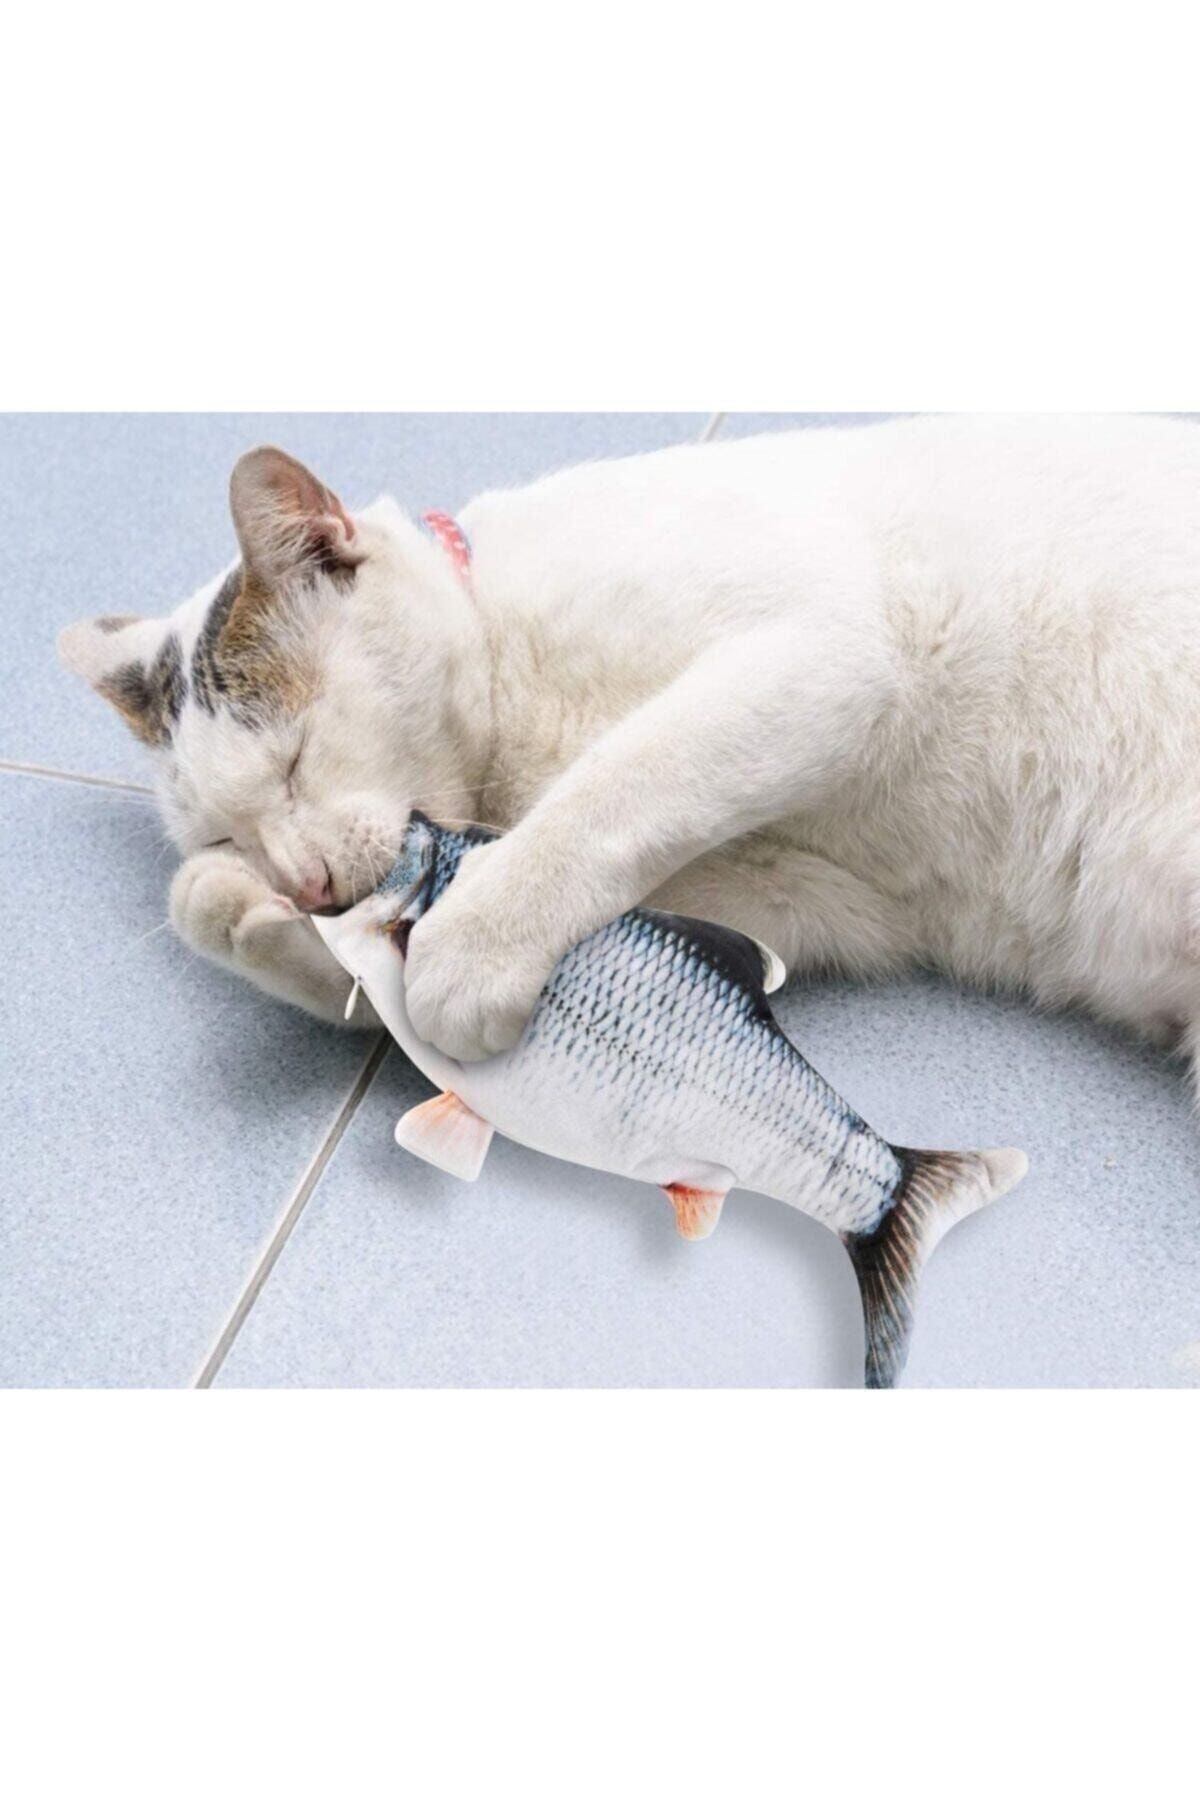 SOFTLAND Dans Eden Balık Şarj Edilebilir Kedi Oyuncağı Gerçekçi Görünüm